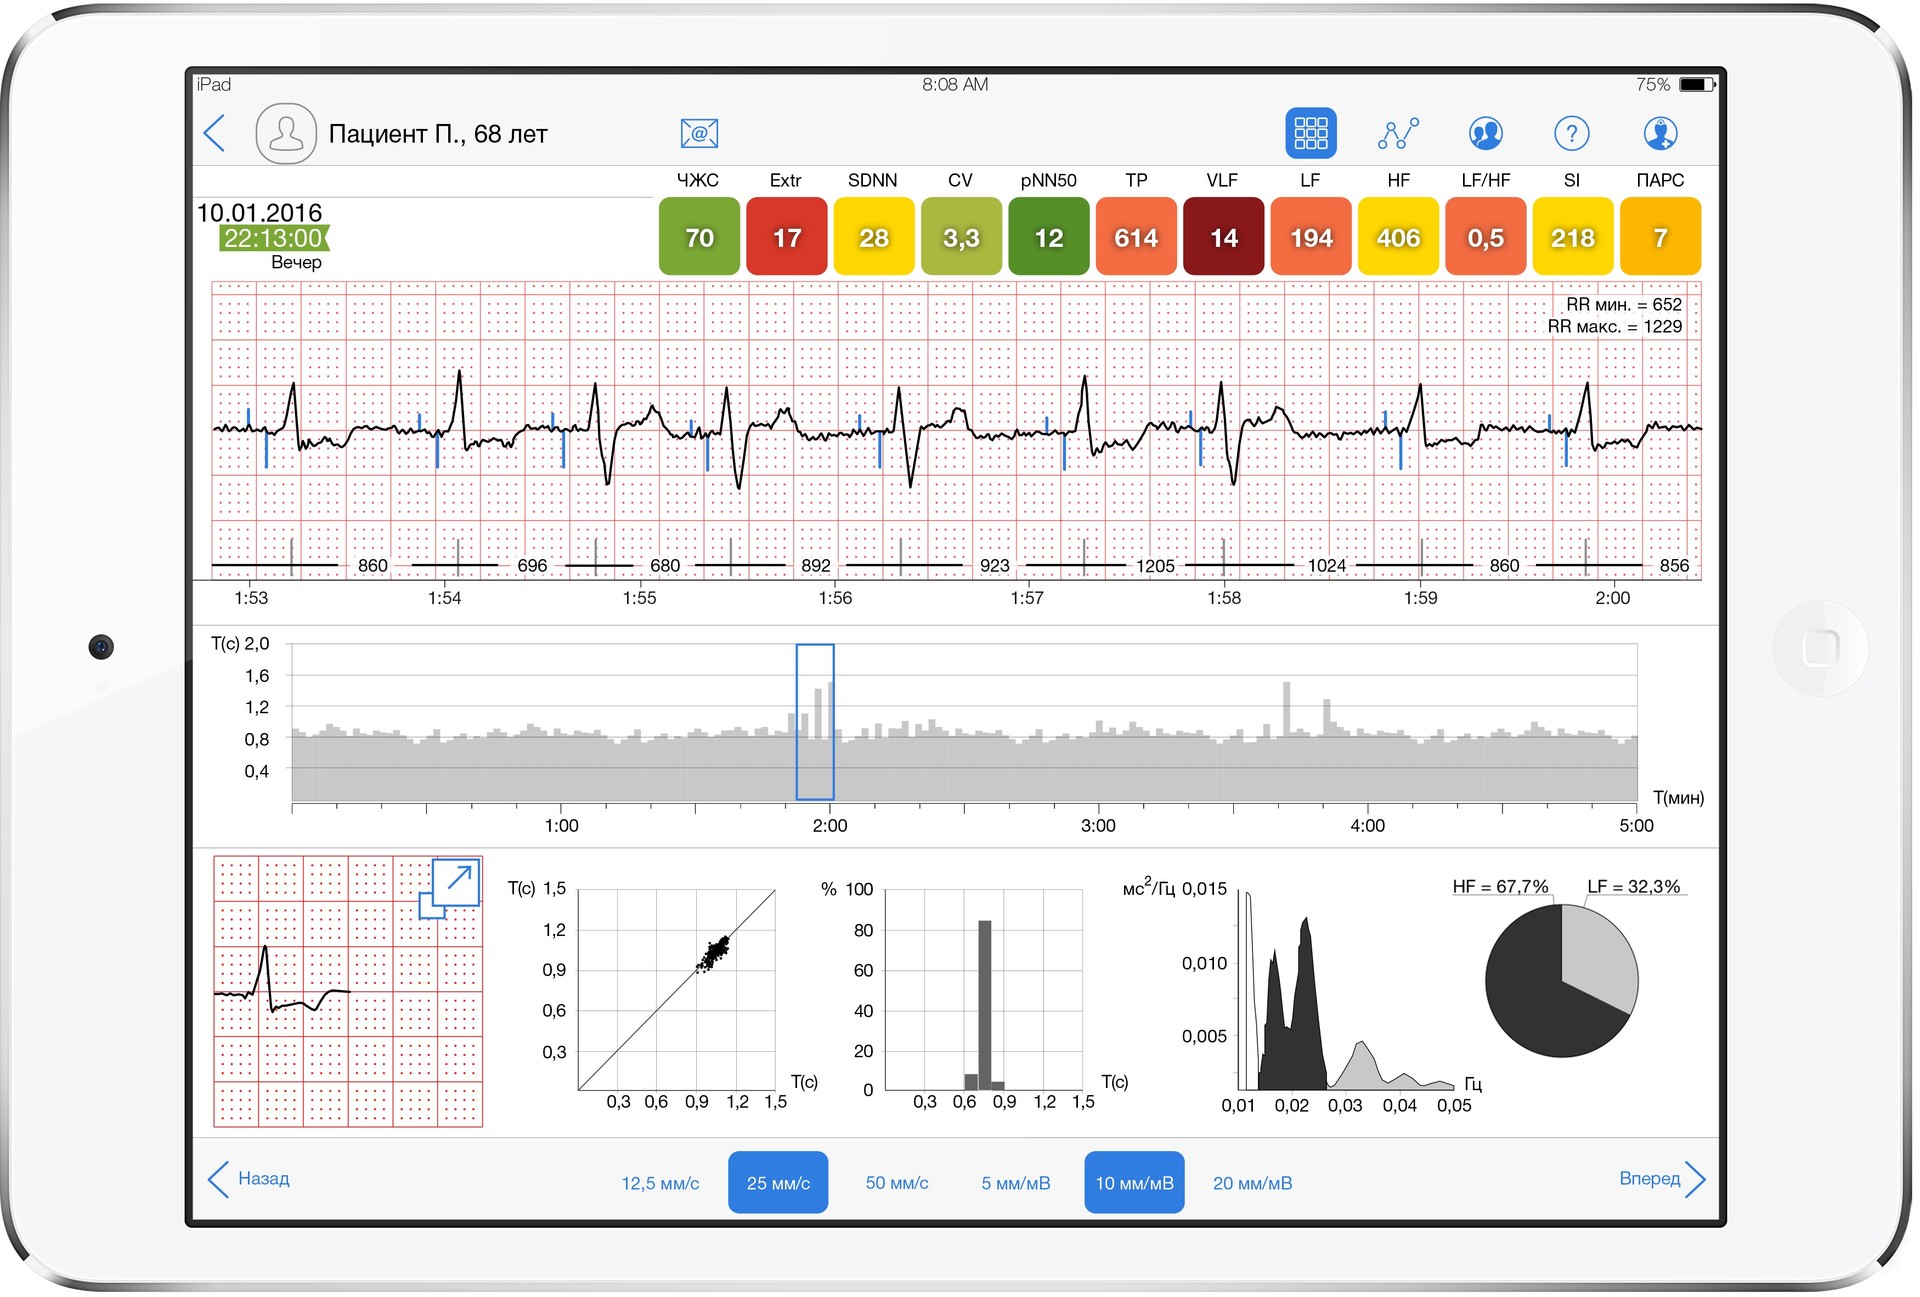 Об использовании когнитивной системы IBM Watson Analytics для анализа данных о работе сердца - 2